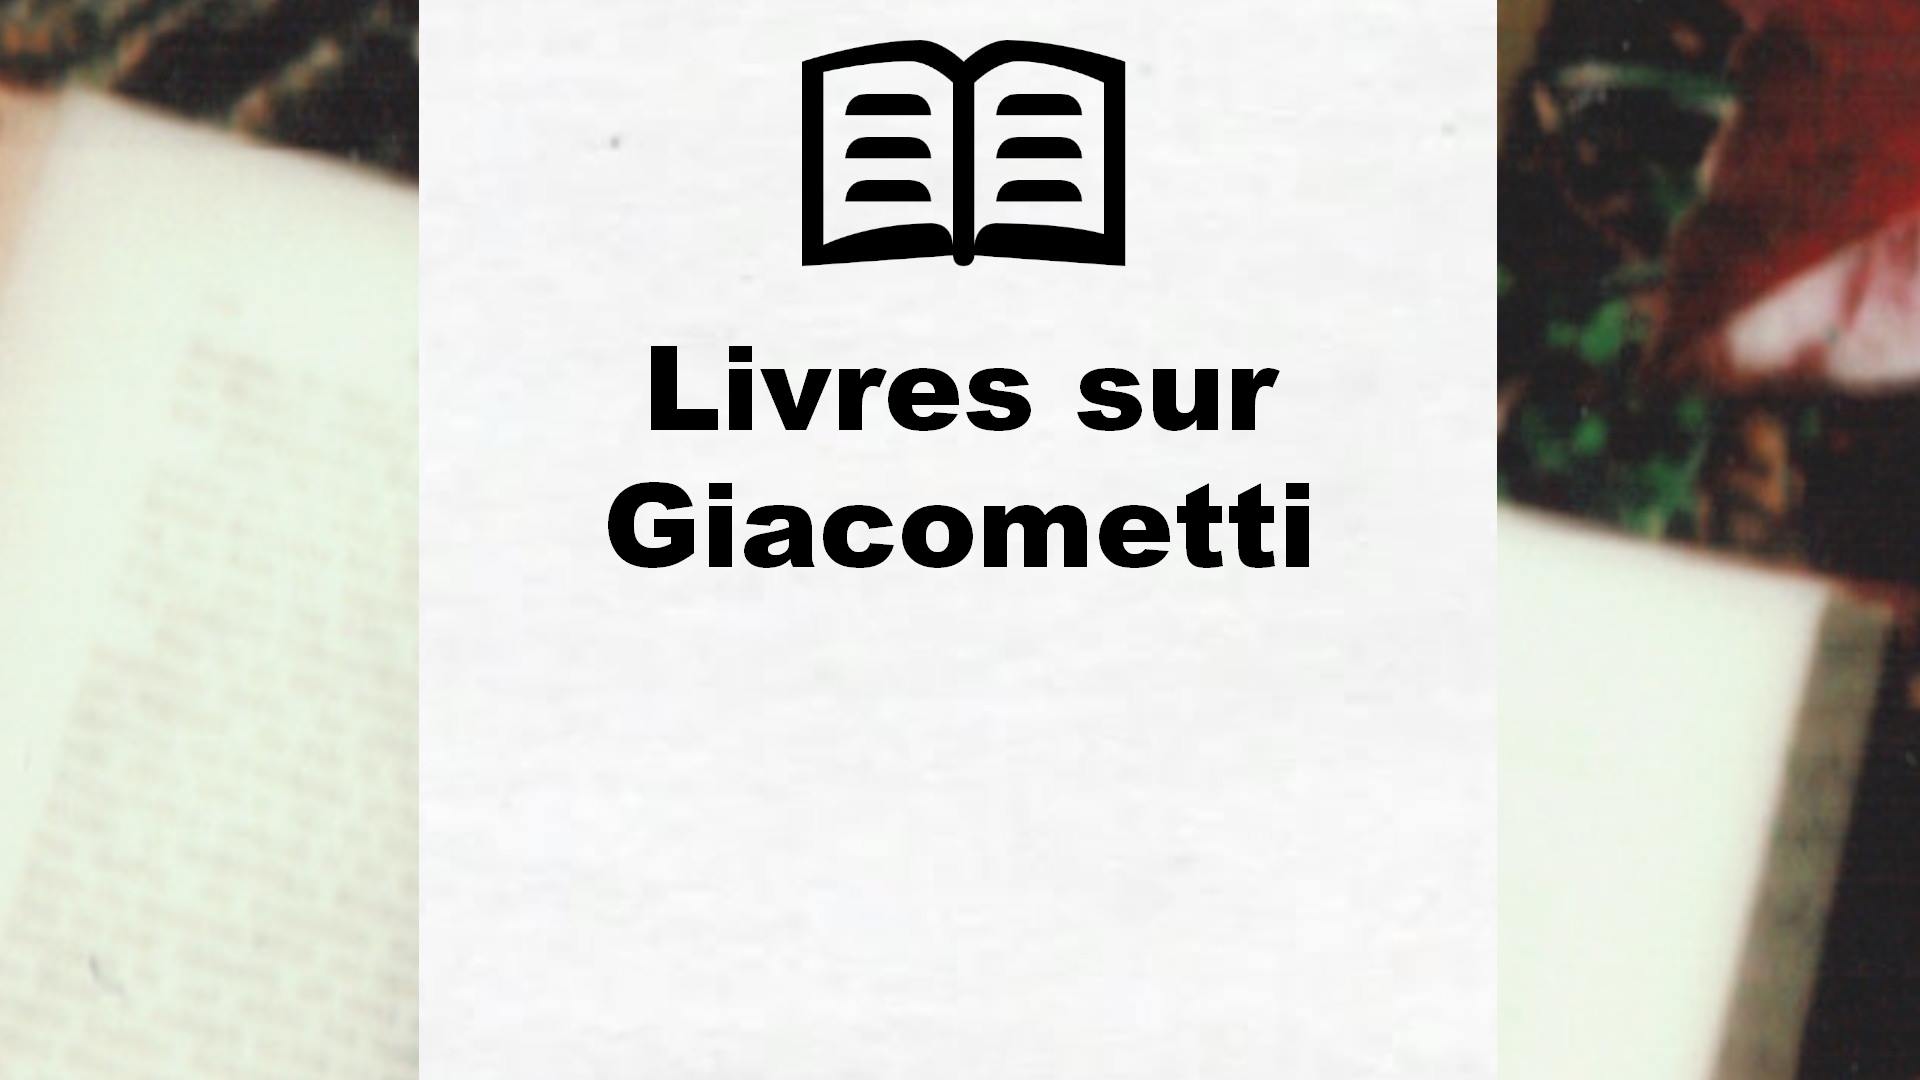 Livres sur Giacometti